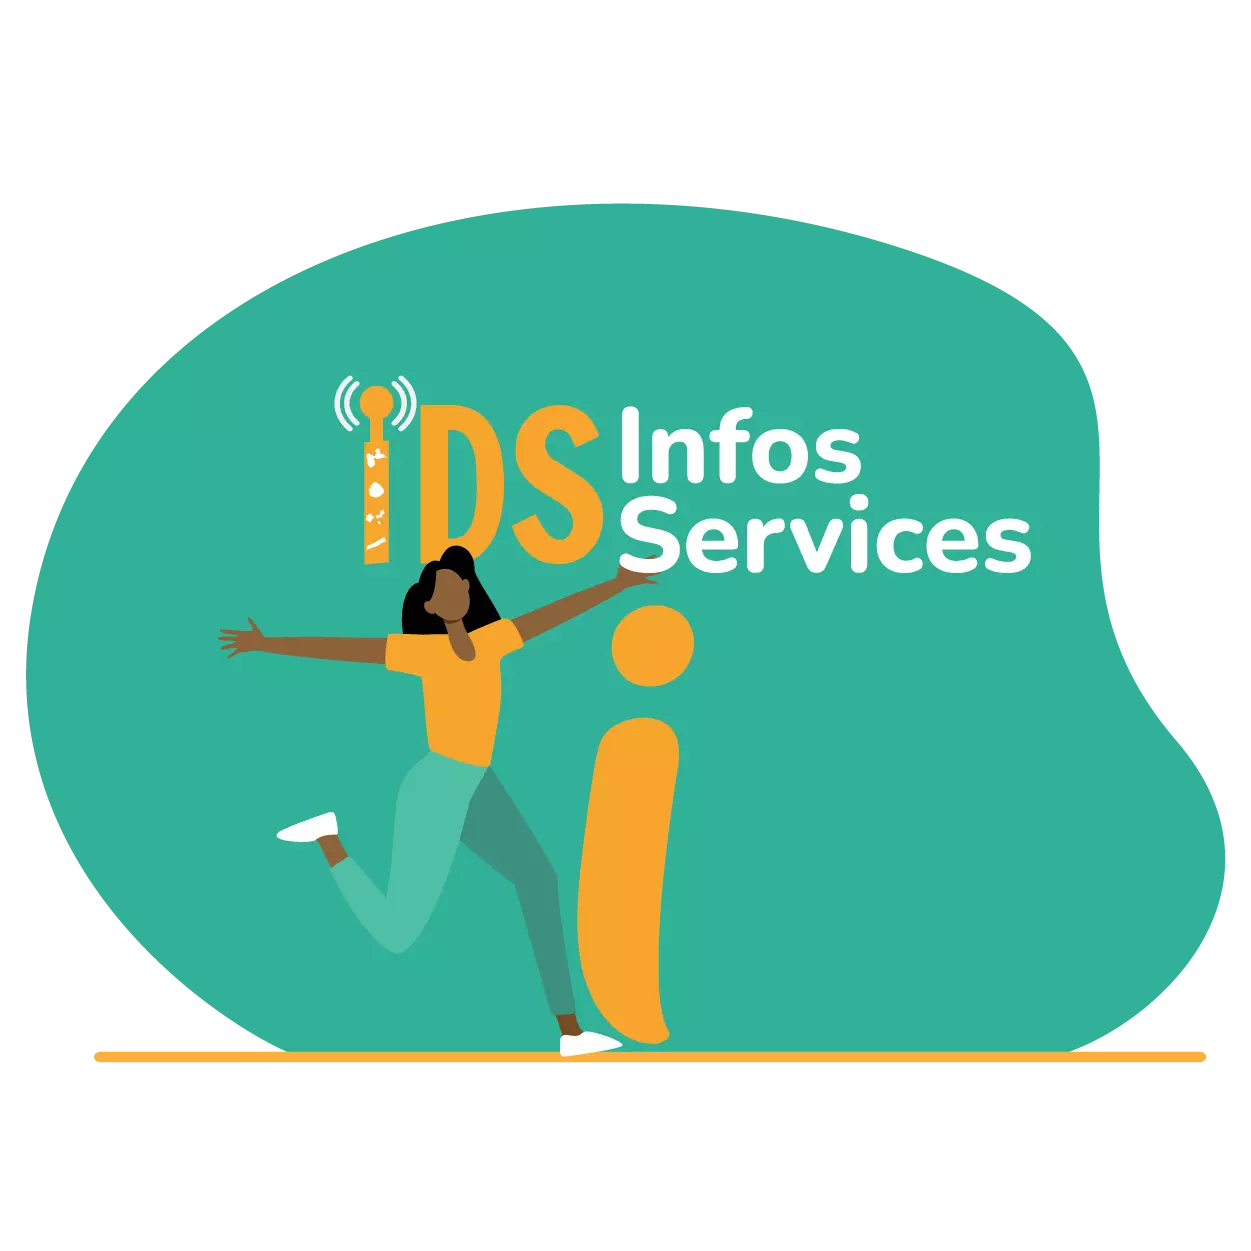 infos services